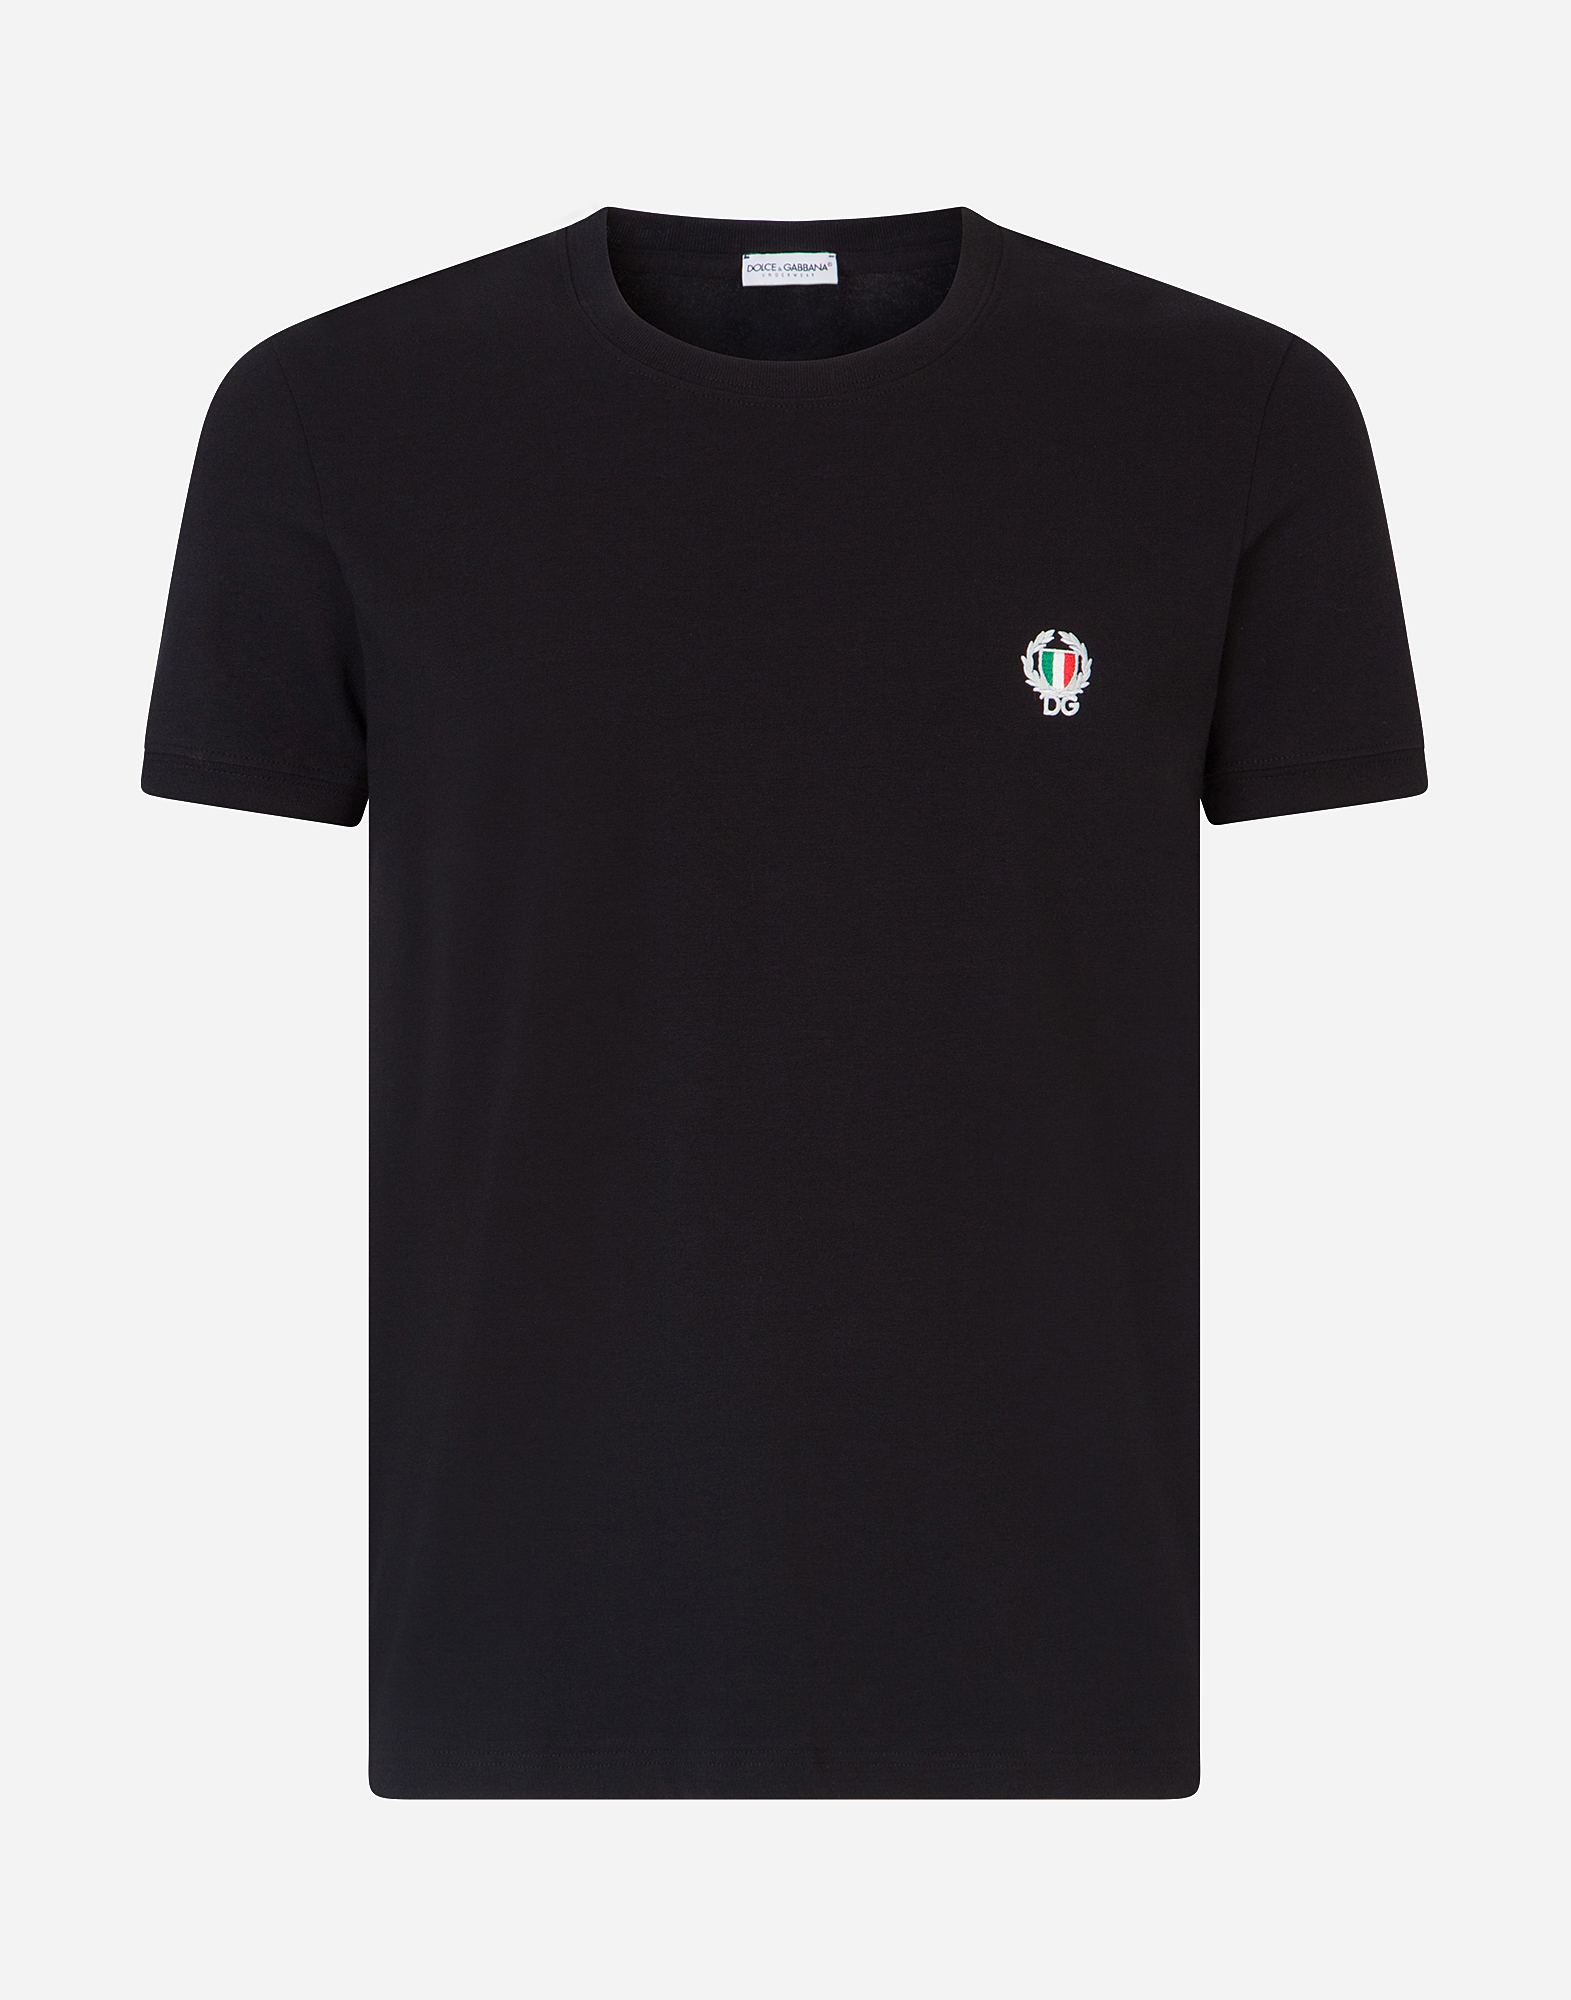 Round-neck stretch cotton t-shirt in Black